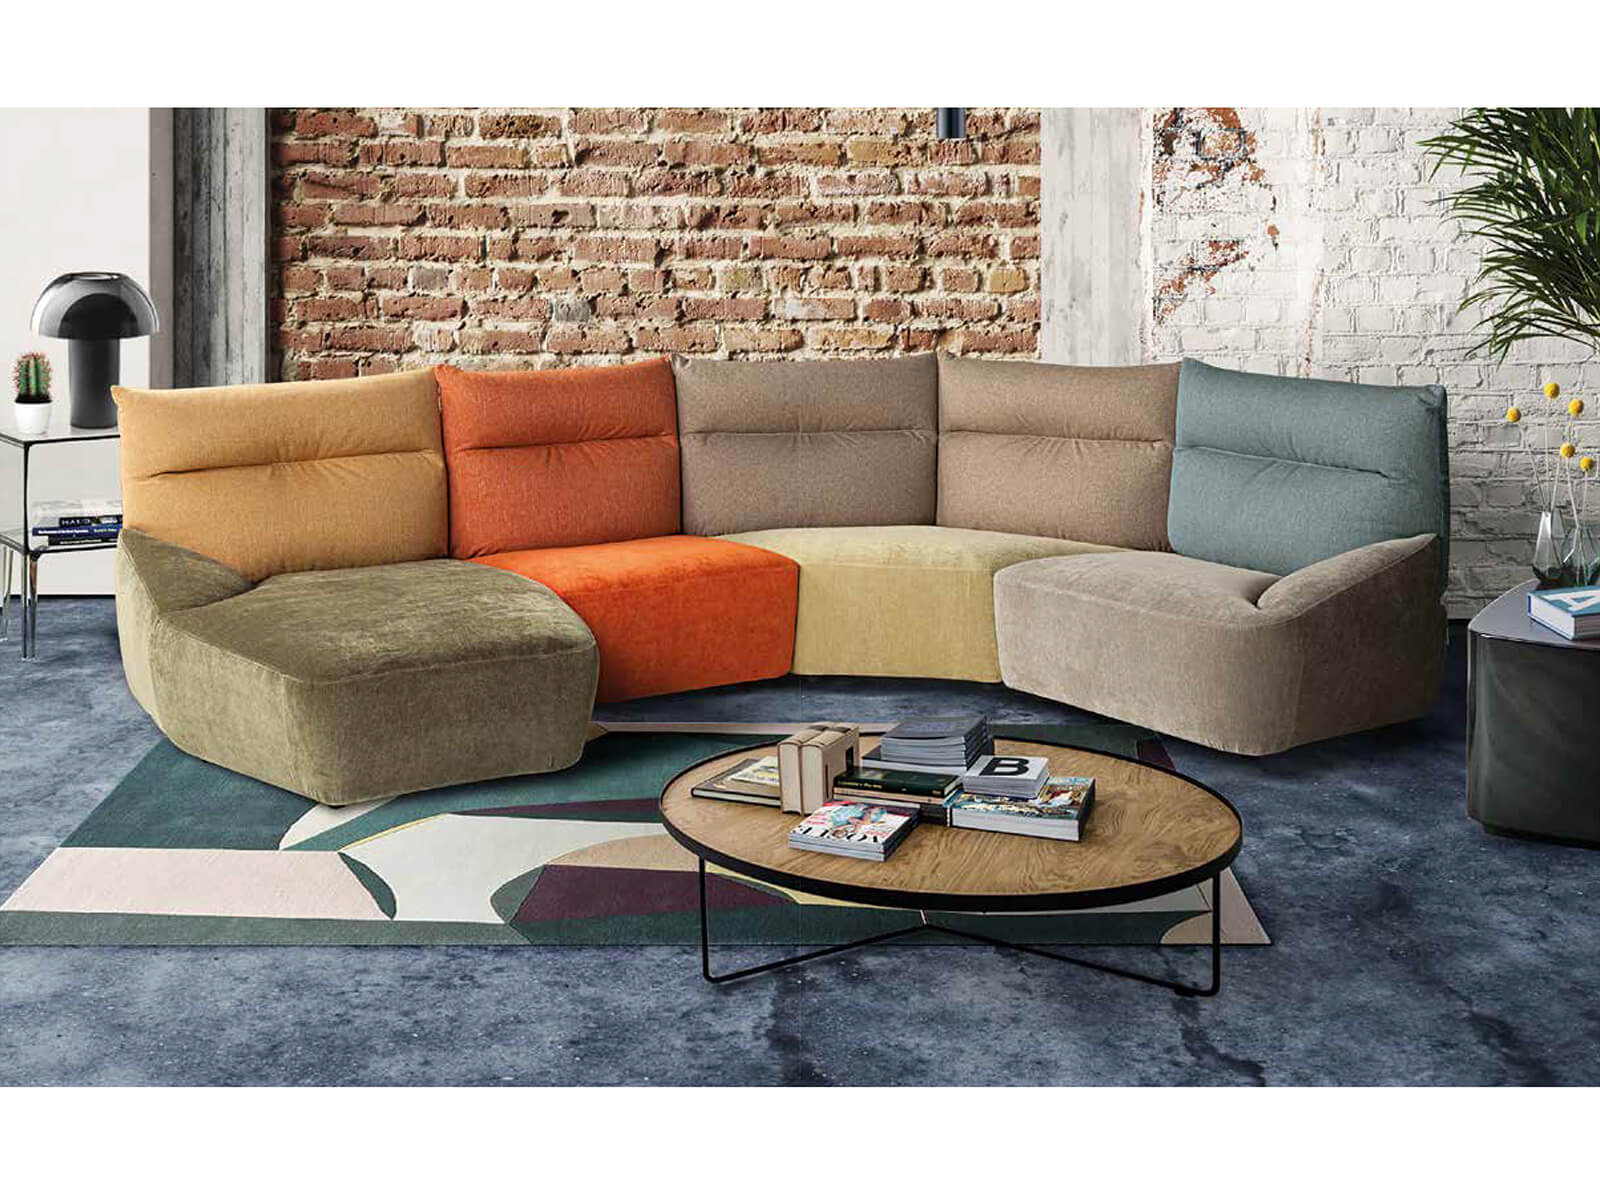 進口家具沙發 模組化彩色拼接